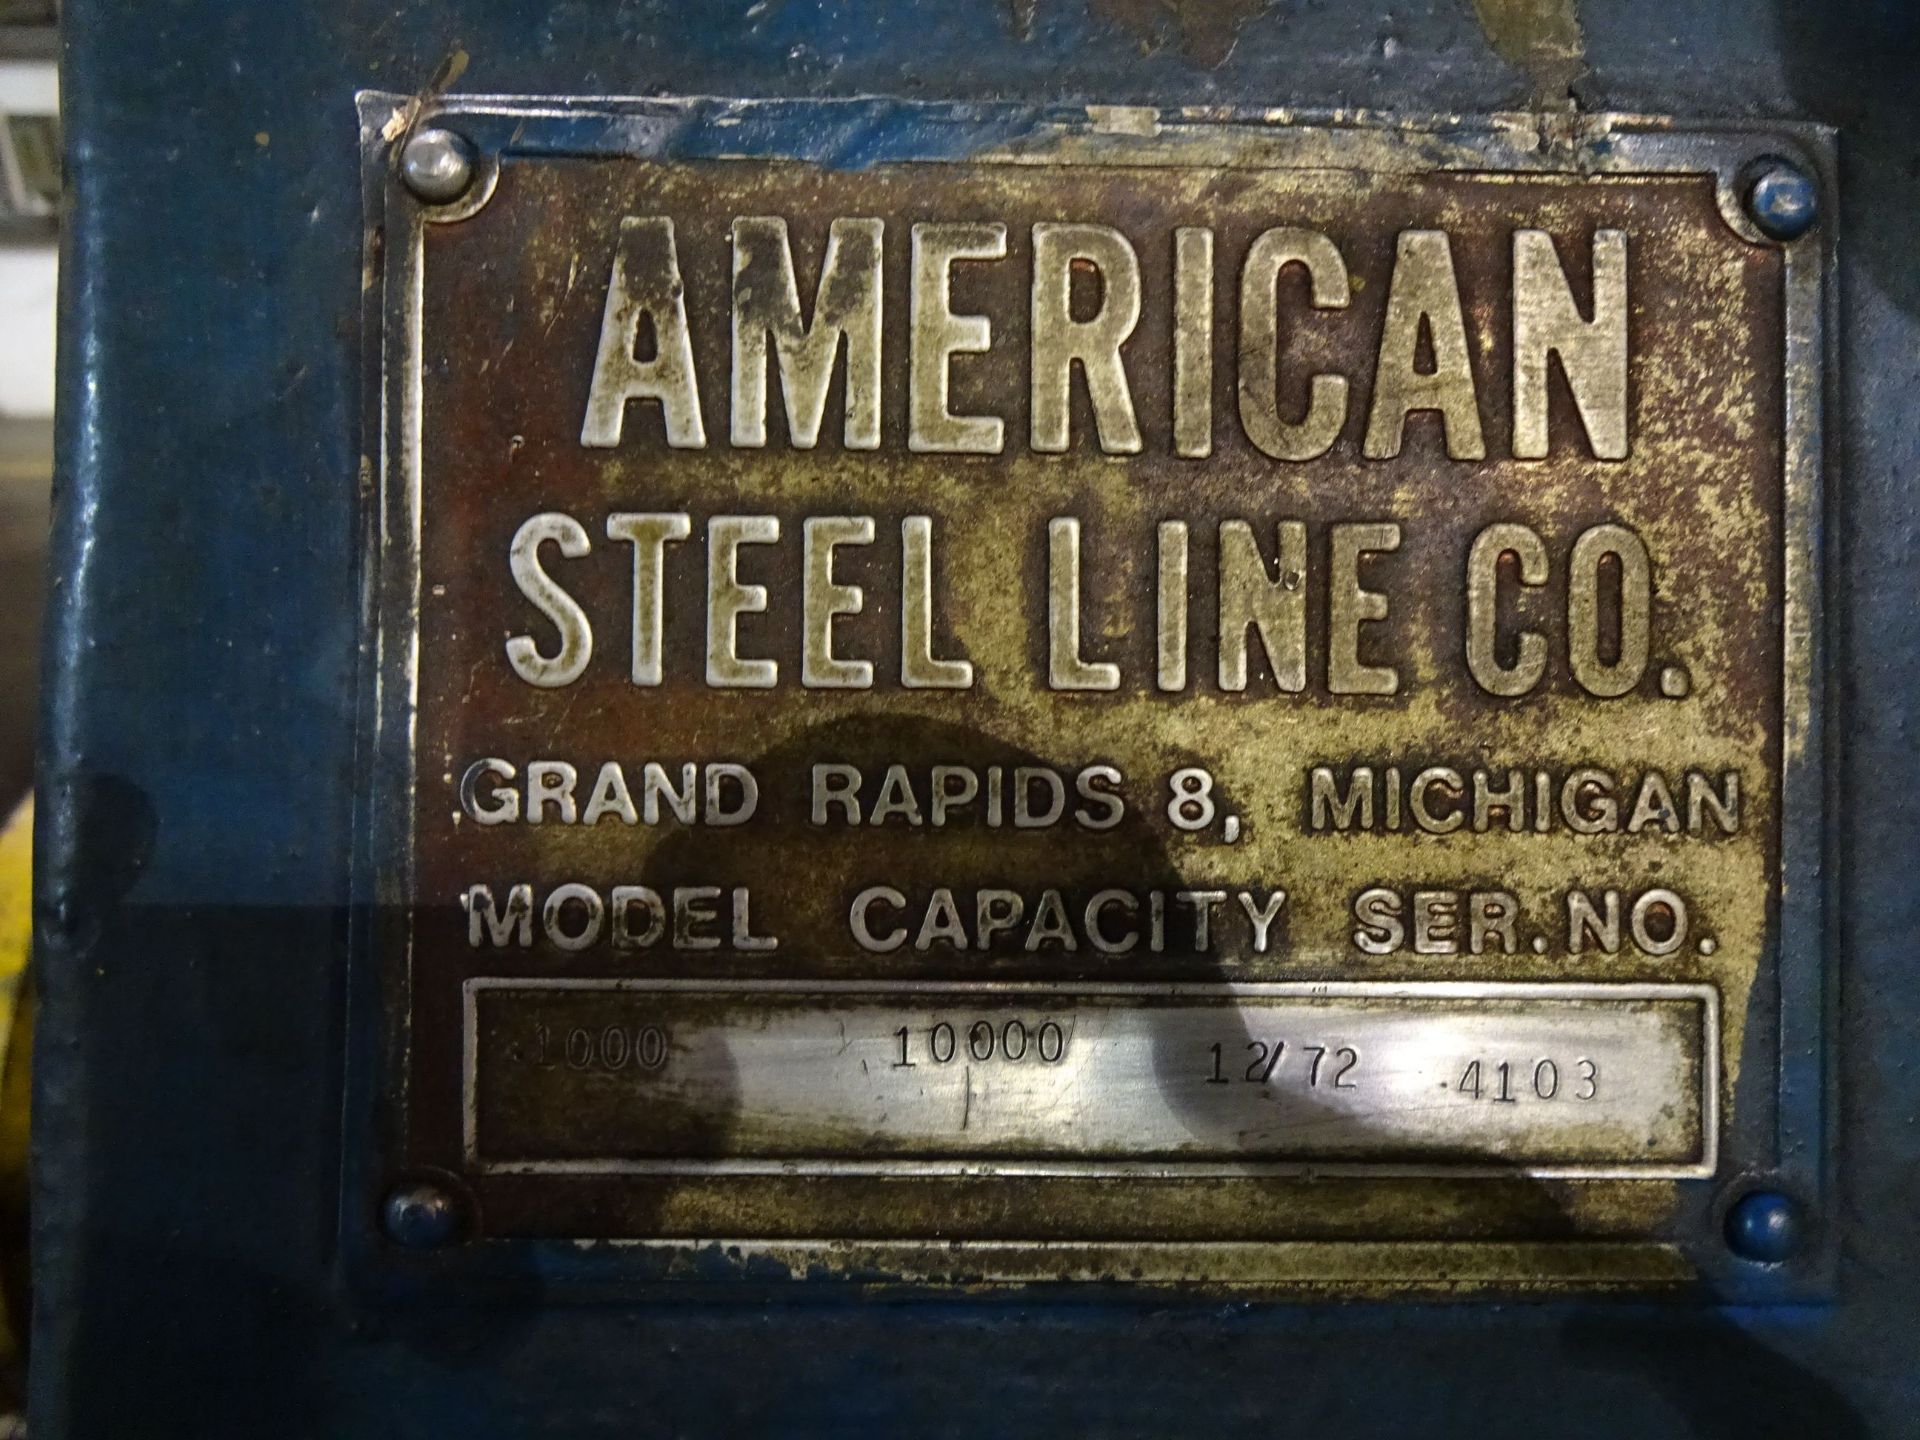 10,000 LB. X 52" AMERICAN STEEL MODEL 1000 COIL REEL; S/N 4103 - Image 6 of 6